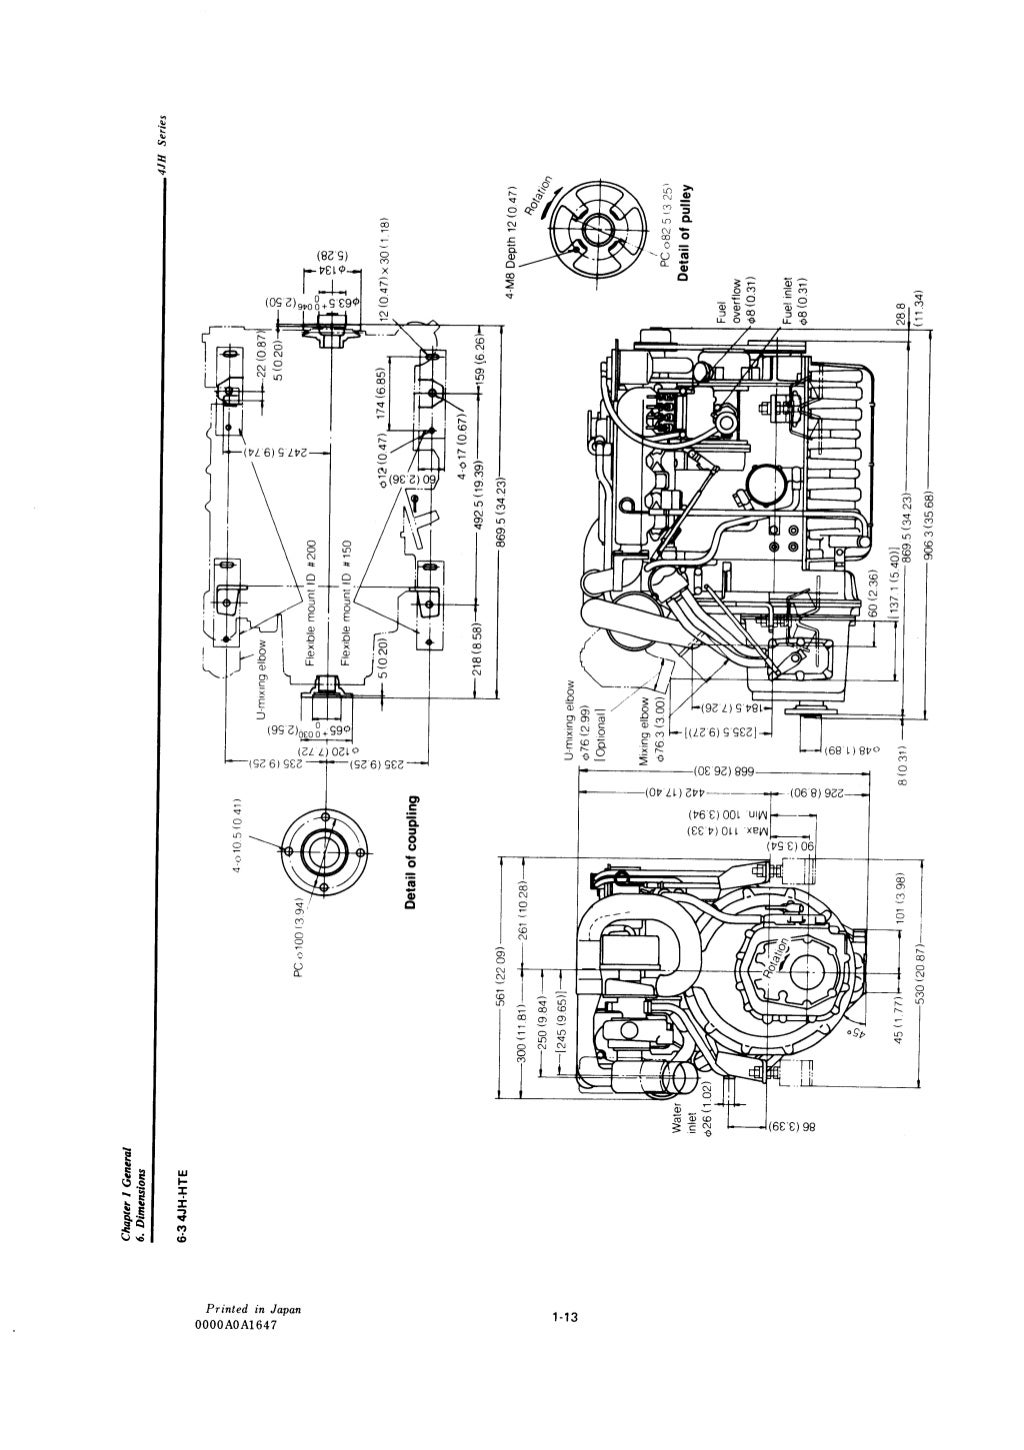 Yanmar 4 jhe marine diesel engine service repair manual